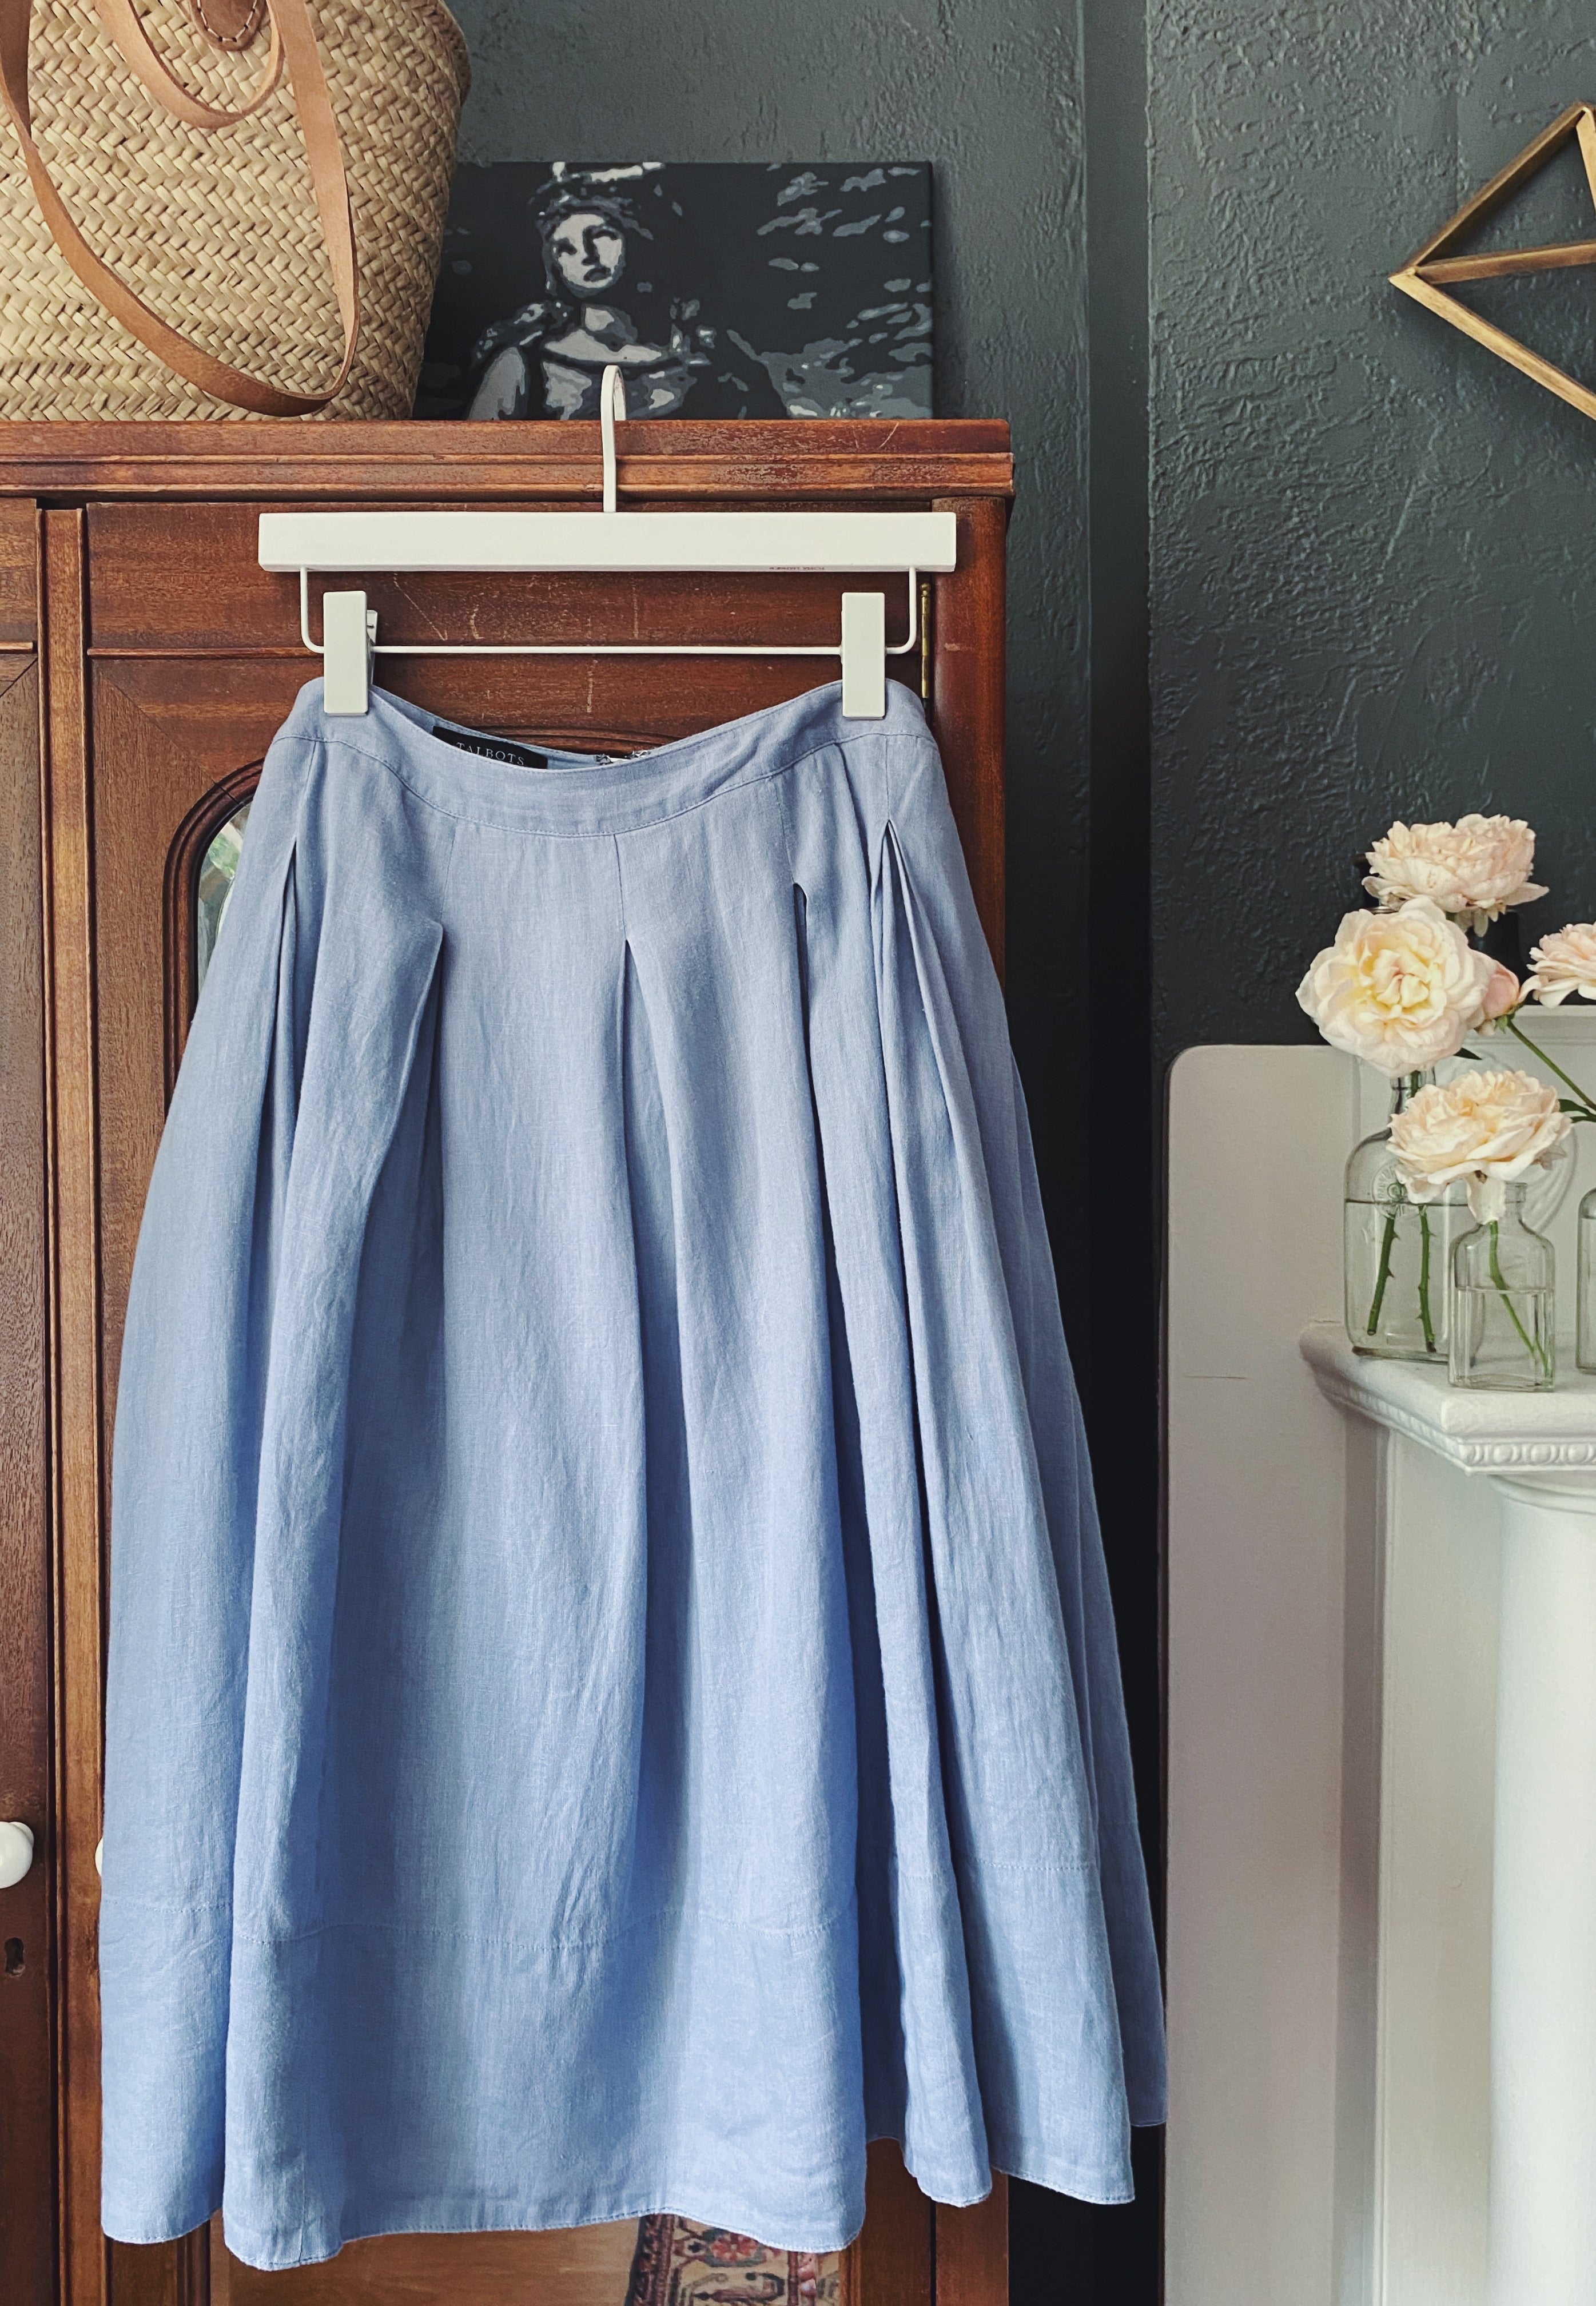 Talbots Linen/Cotton Chambray Pleated Skirt